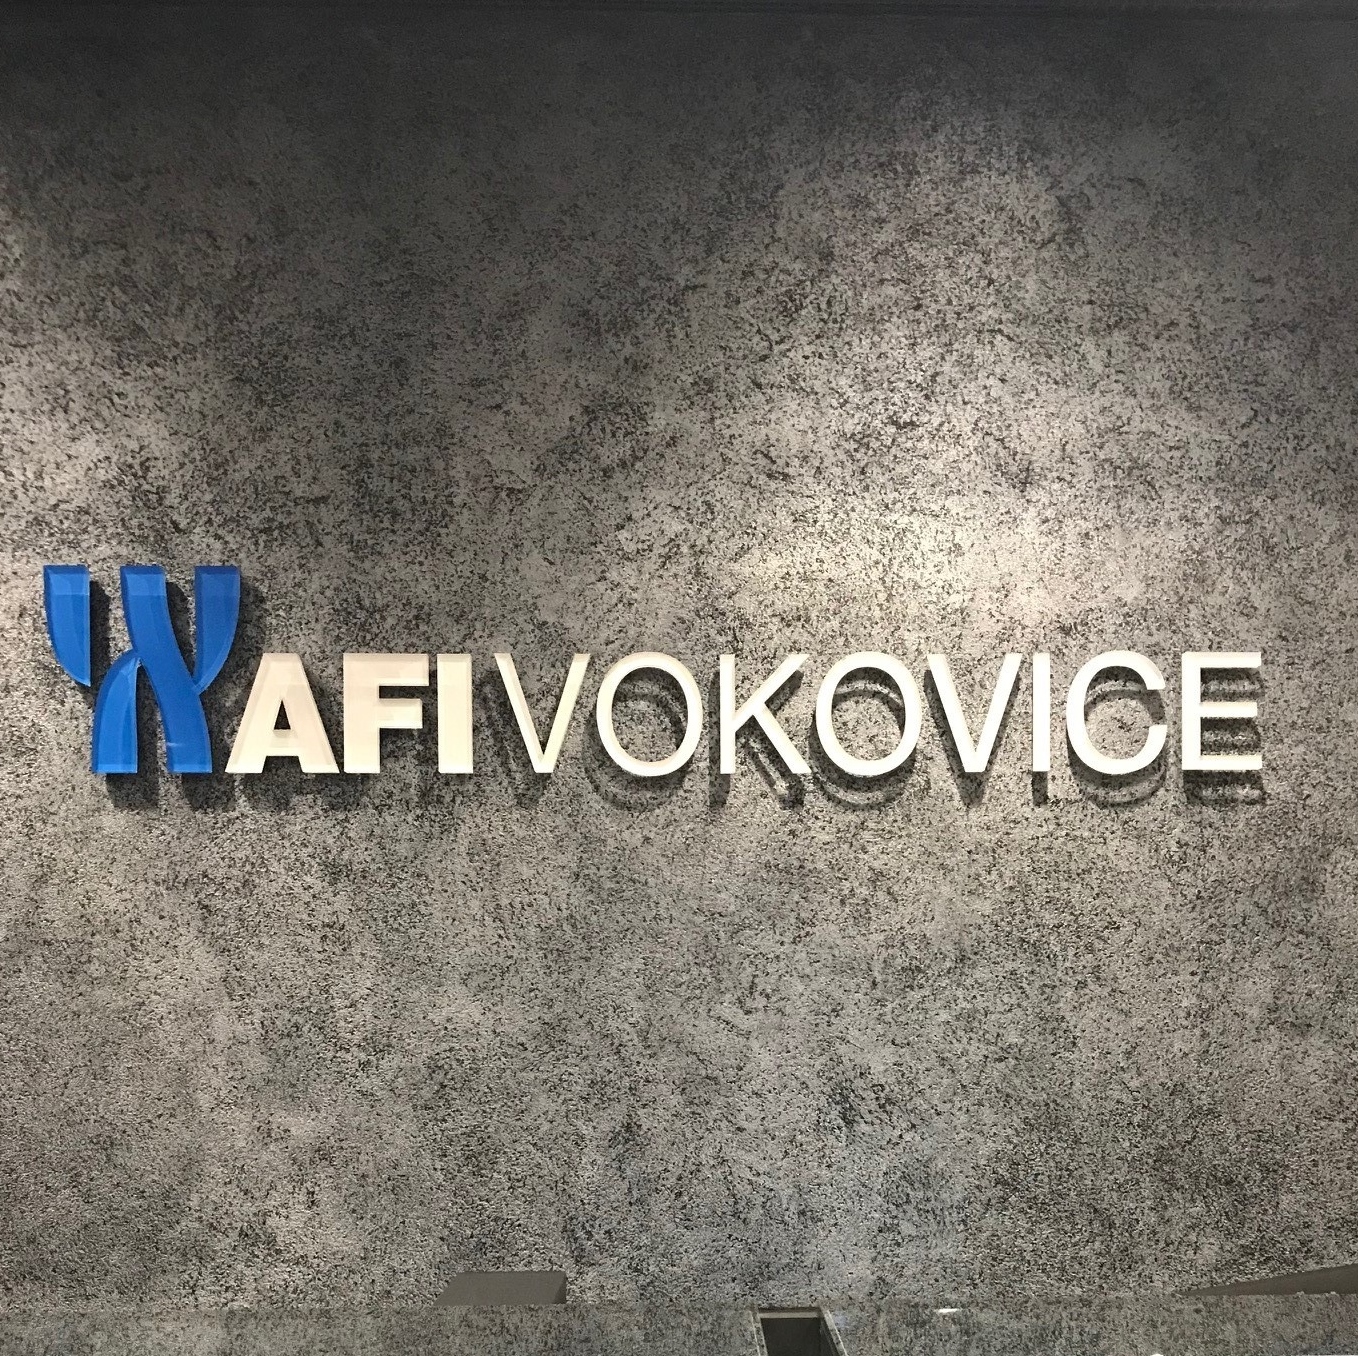 Le site AFI Vokovice a été ouvert à ses occupants